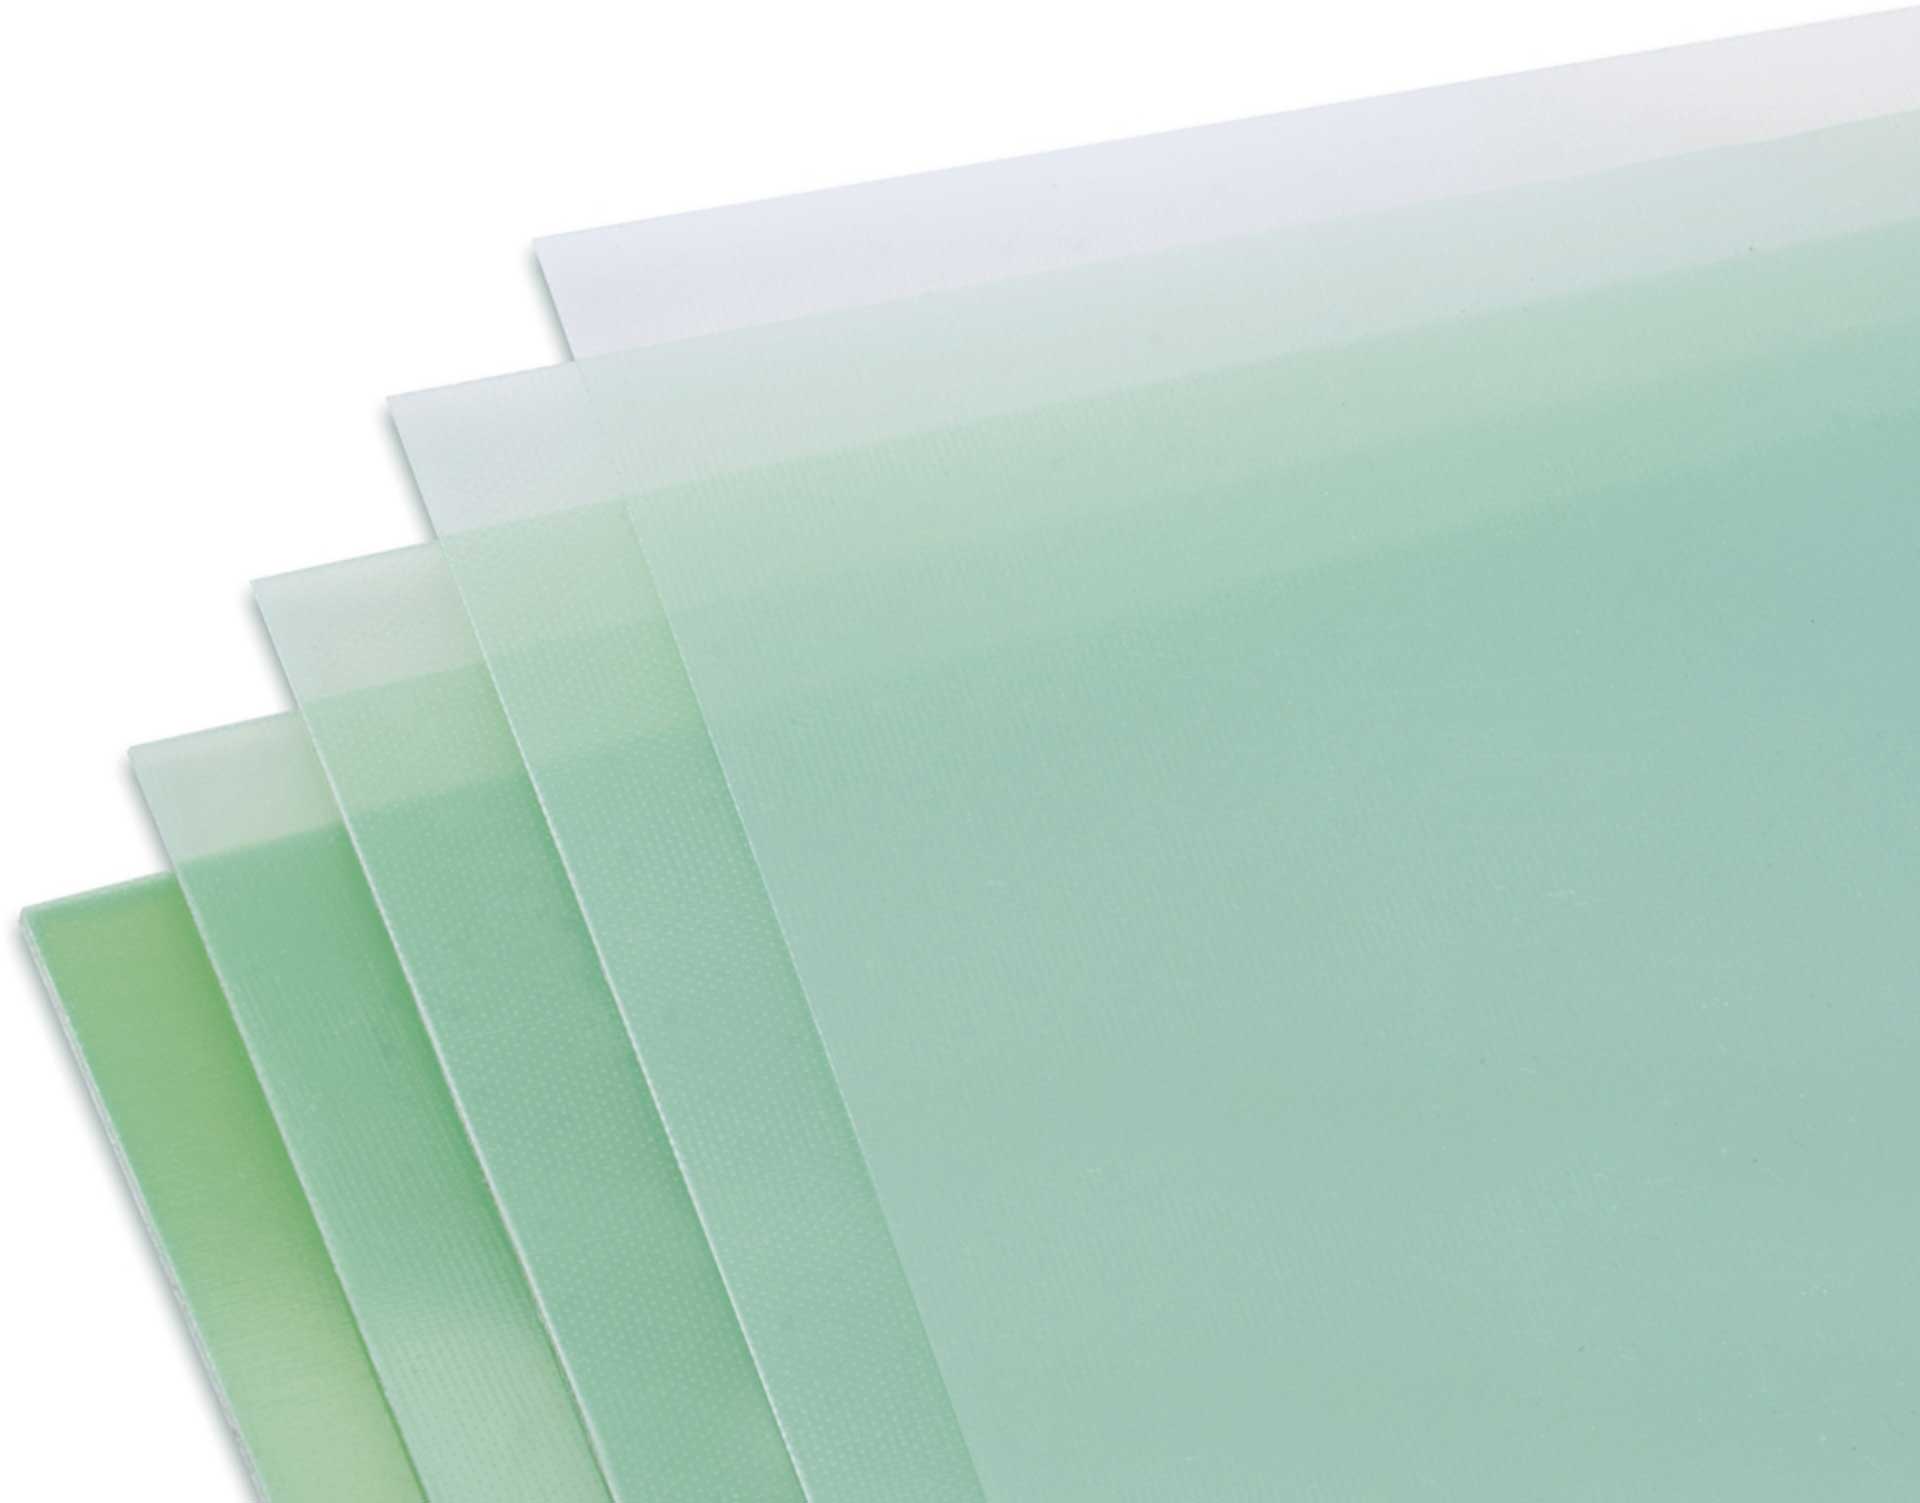 Modellbau Lindinger GFK-Platte 2,0x610x340mm matt, grünlich transparent